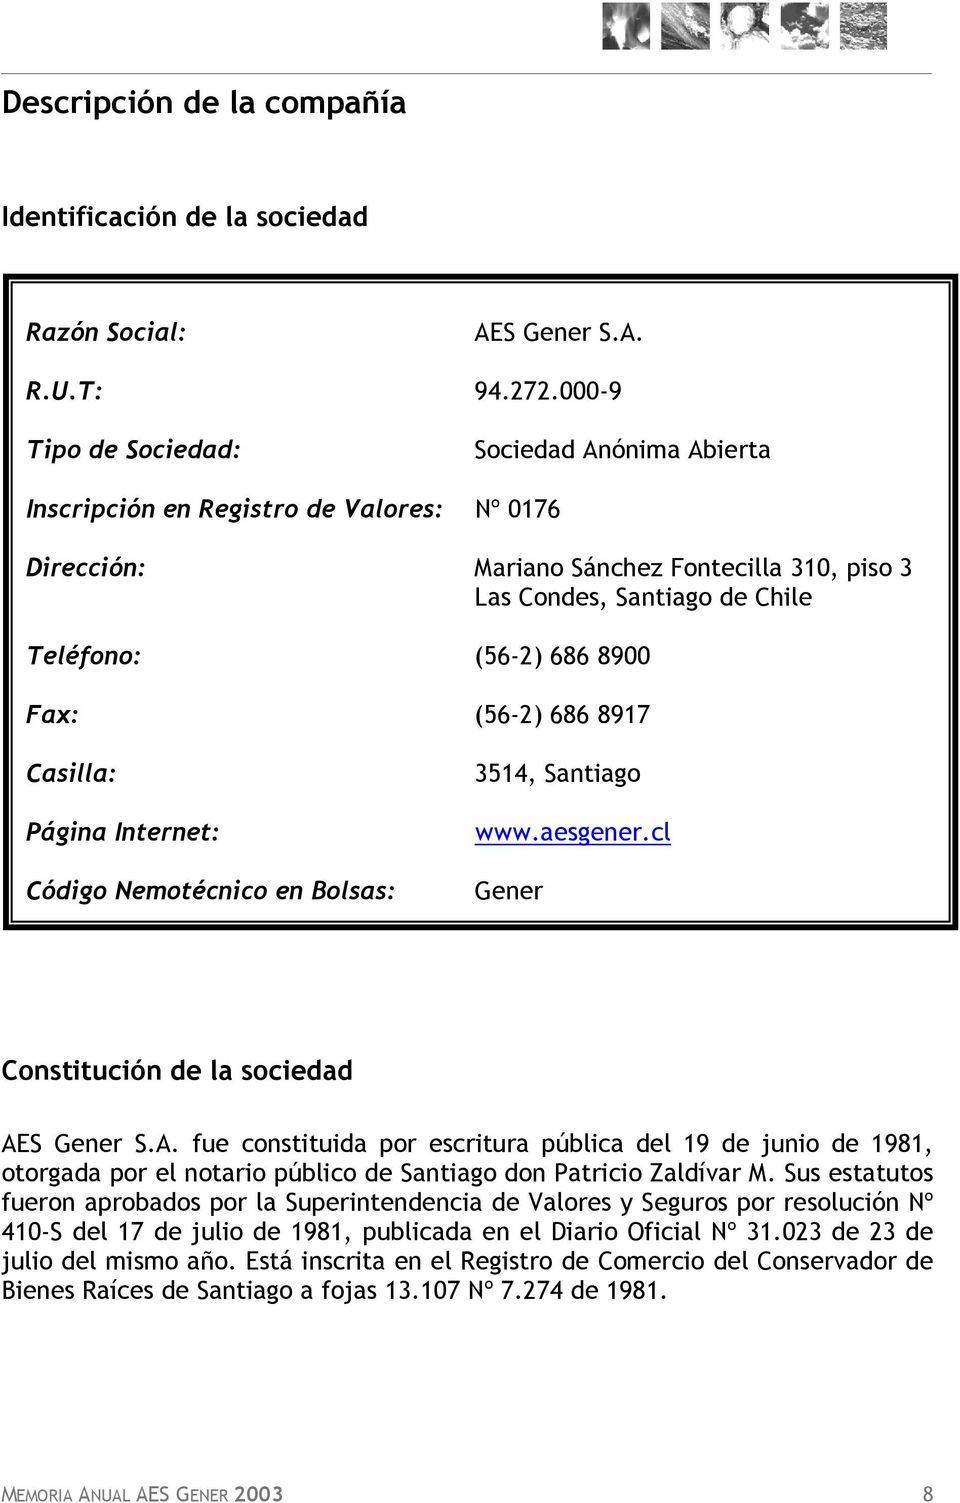 Fax: (56-2) 686 8917 Casilla: Página Internet: Código Nemotécnico en Bolsas: 3514, Santiago www.aesgener.cl Gener Constitución de la sociedad AE